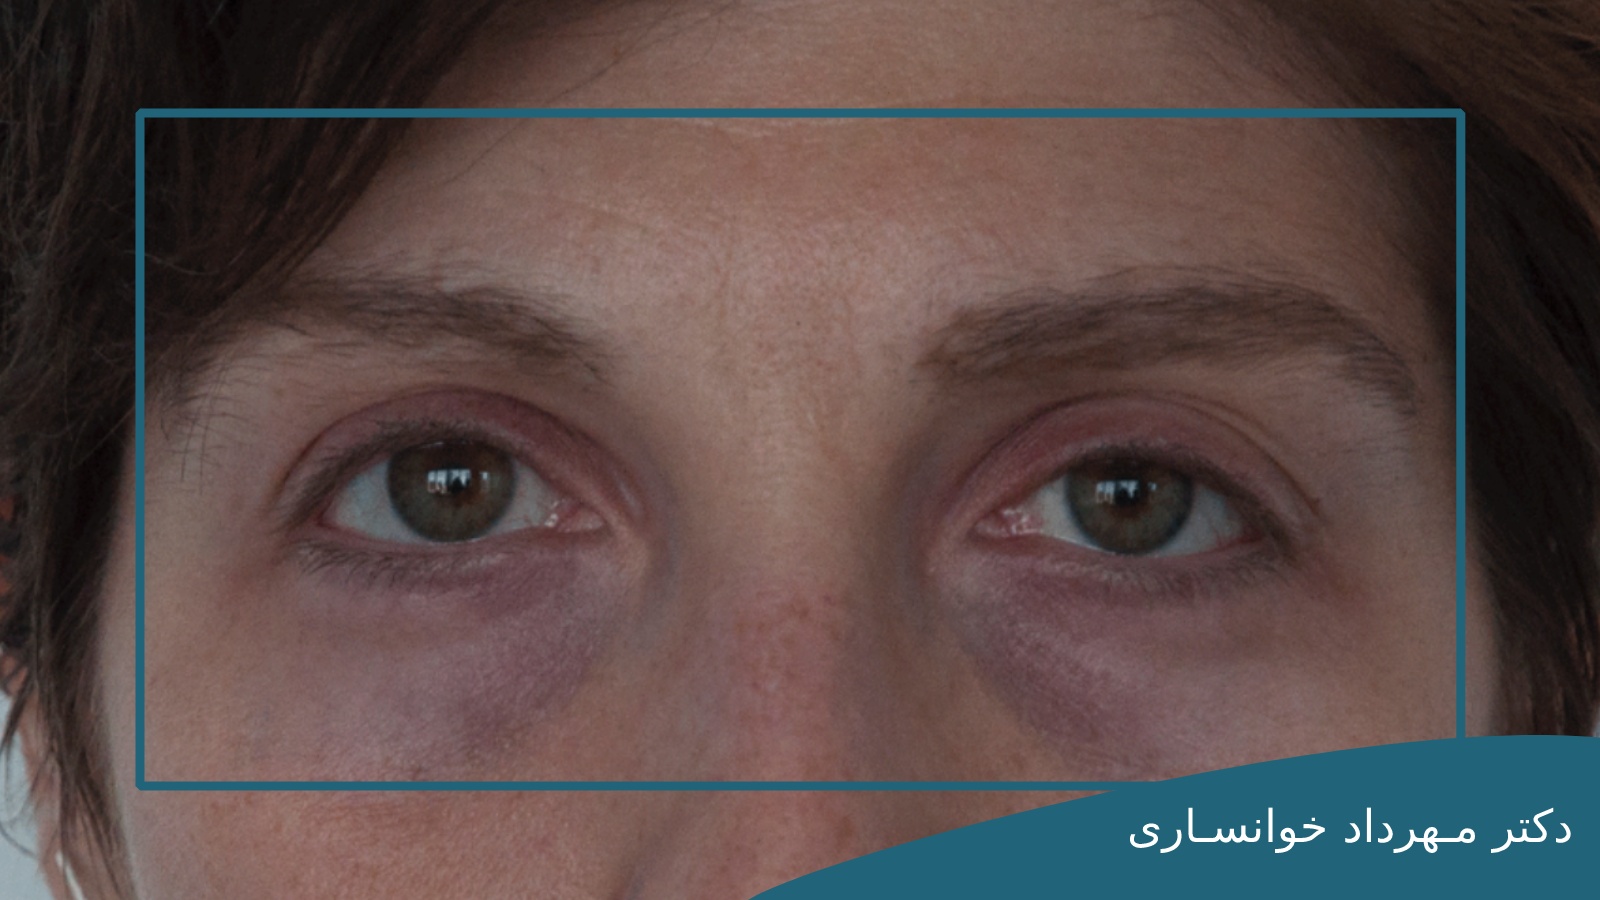 رفع کبودی زیر چشم بعد از جراحی بلفاروپلاستی-dr-mkhansari